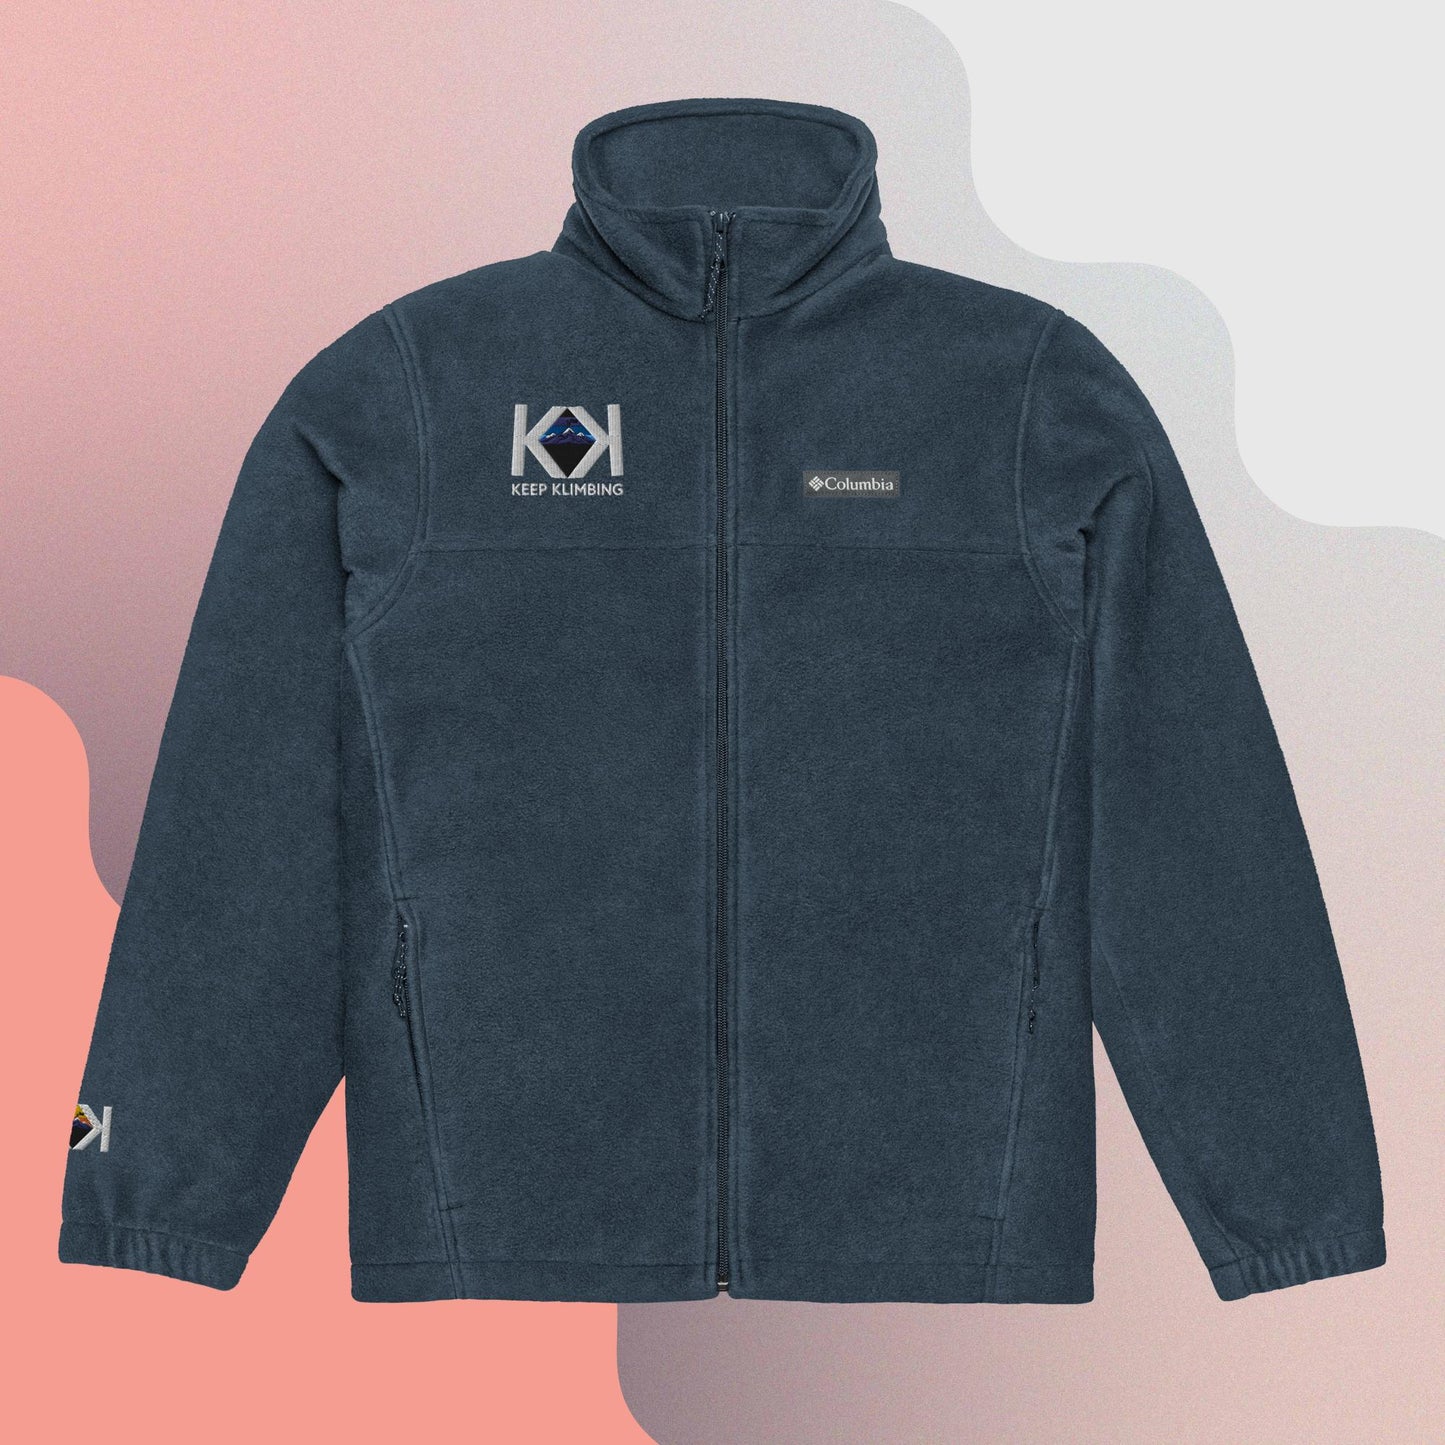 Keep Klimbing Unisex Columbia fleece jacket